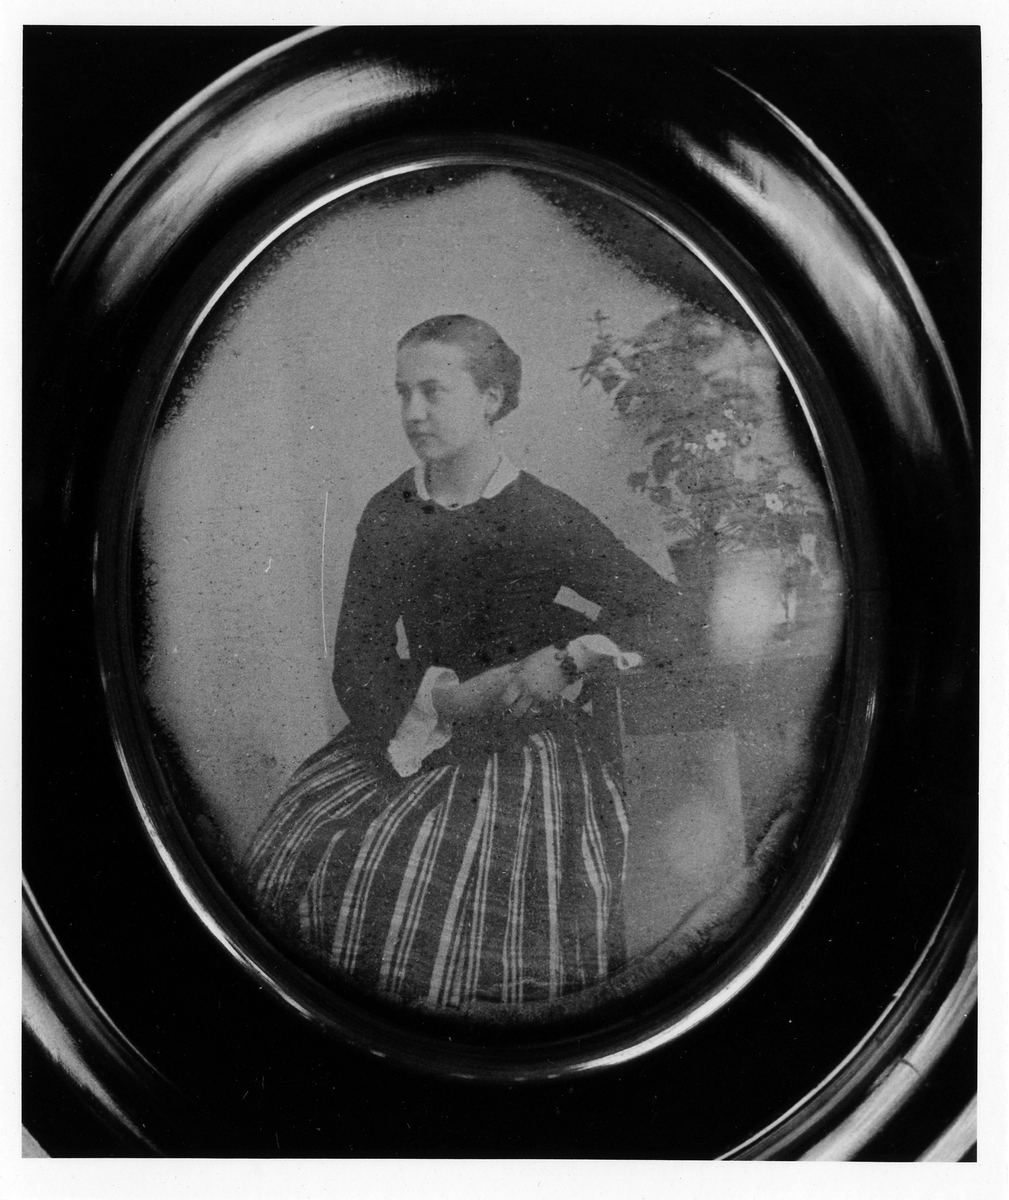 Portätt, daguerreotypi i oval form. En kvinna, i blus och randig kjol, sitter halvtvänt bort från kameran med en blomkruka bakom sig.